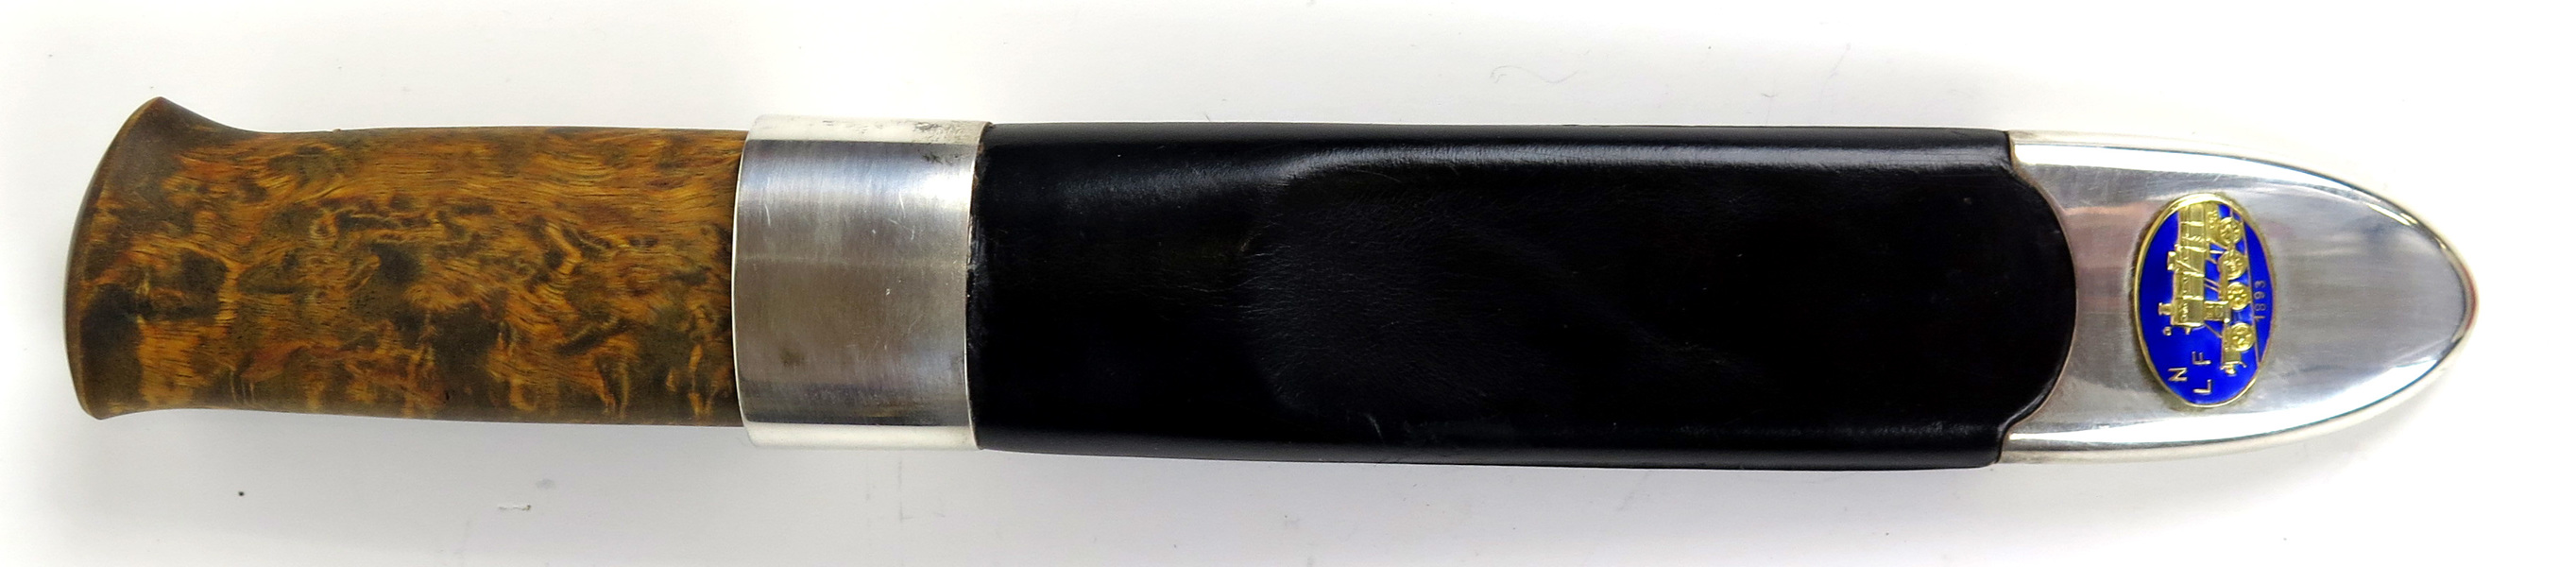 Kniv i balja, sk Peer Gynt-kniv, David Andersen, Oslo, 1900-talets 2 hälft, _4118a_8d88013c1fe6c1c_lg.jpeg